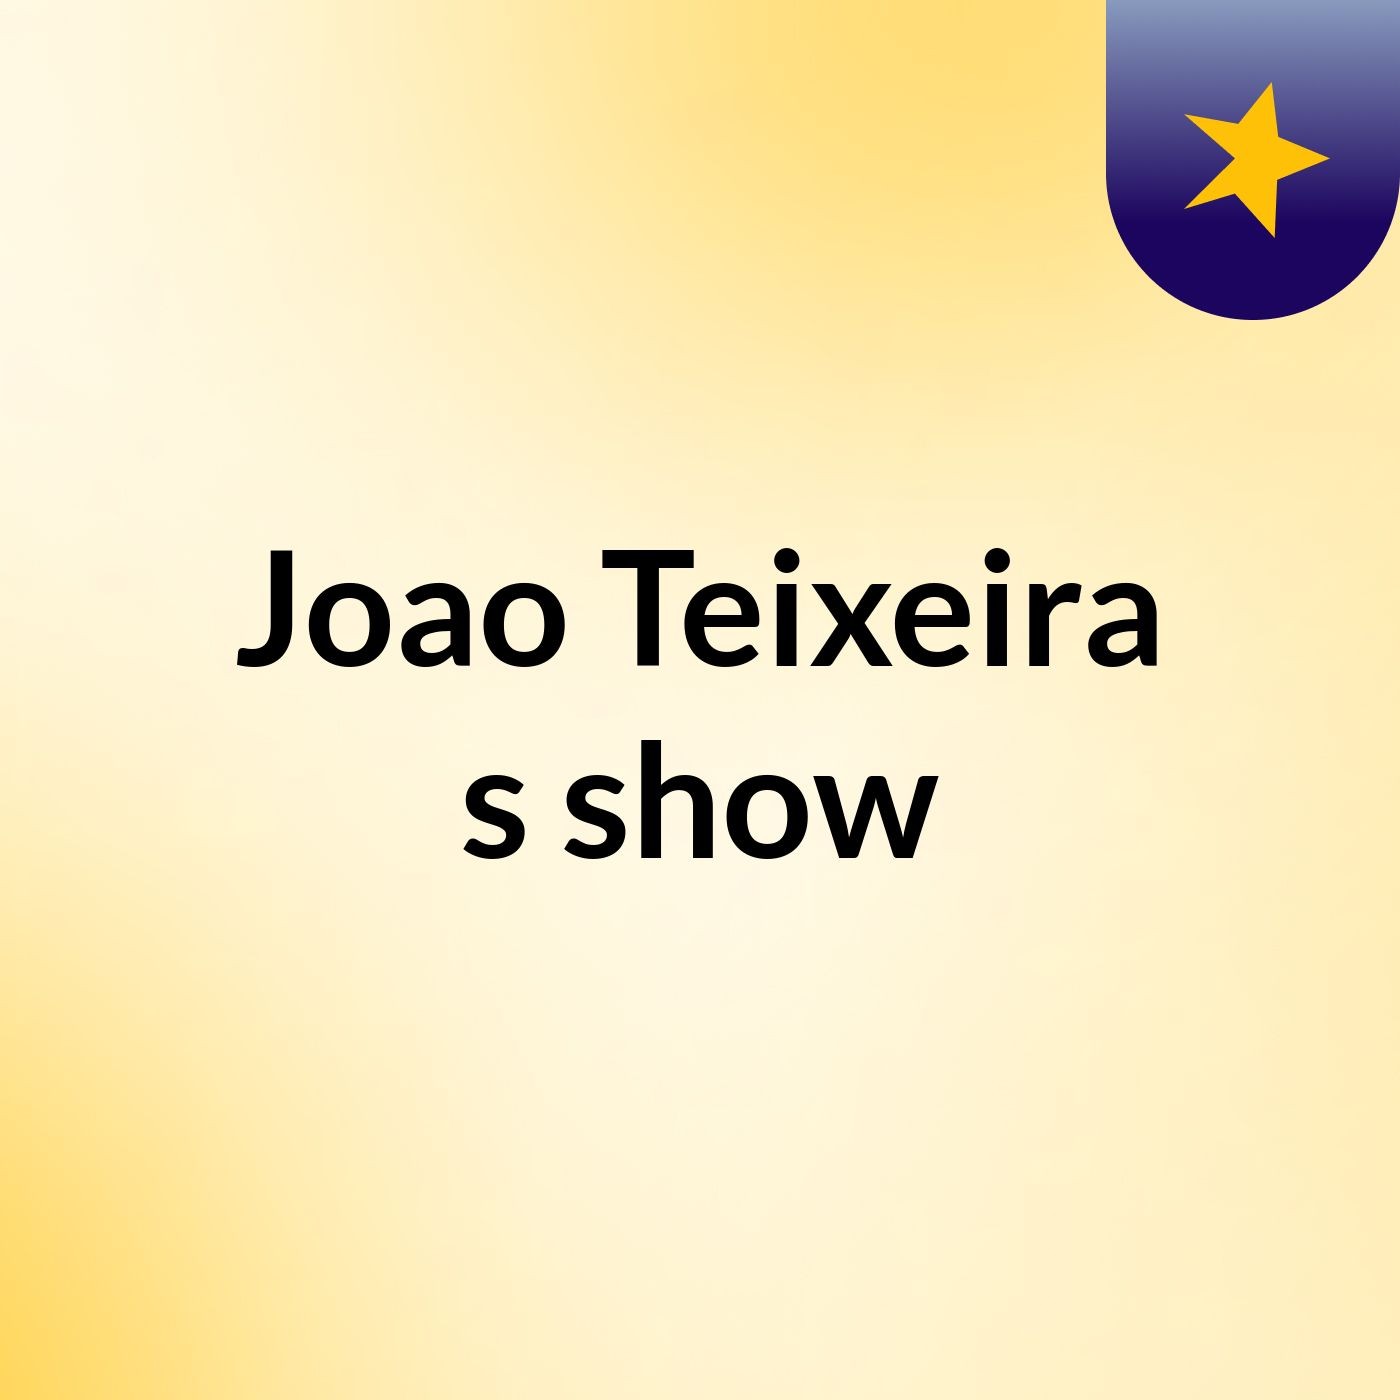 Joao Teixeira's show